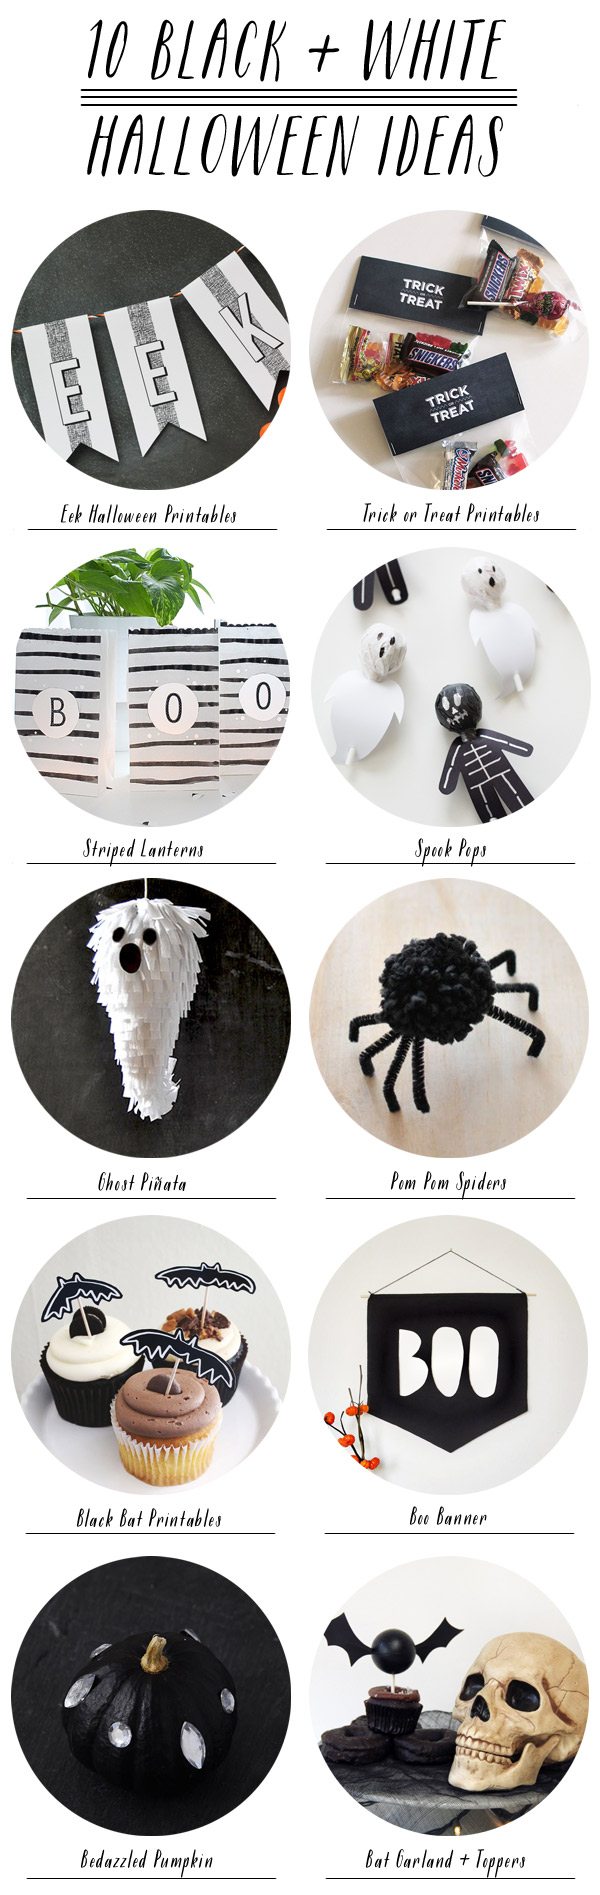 10 Black + White Halloween Ideas